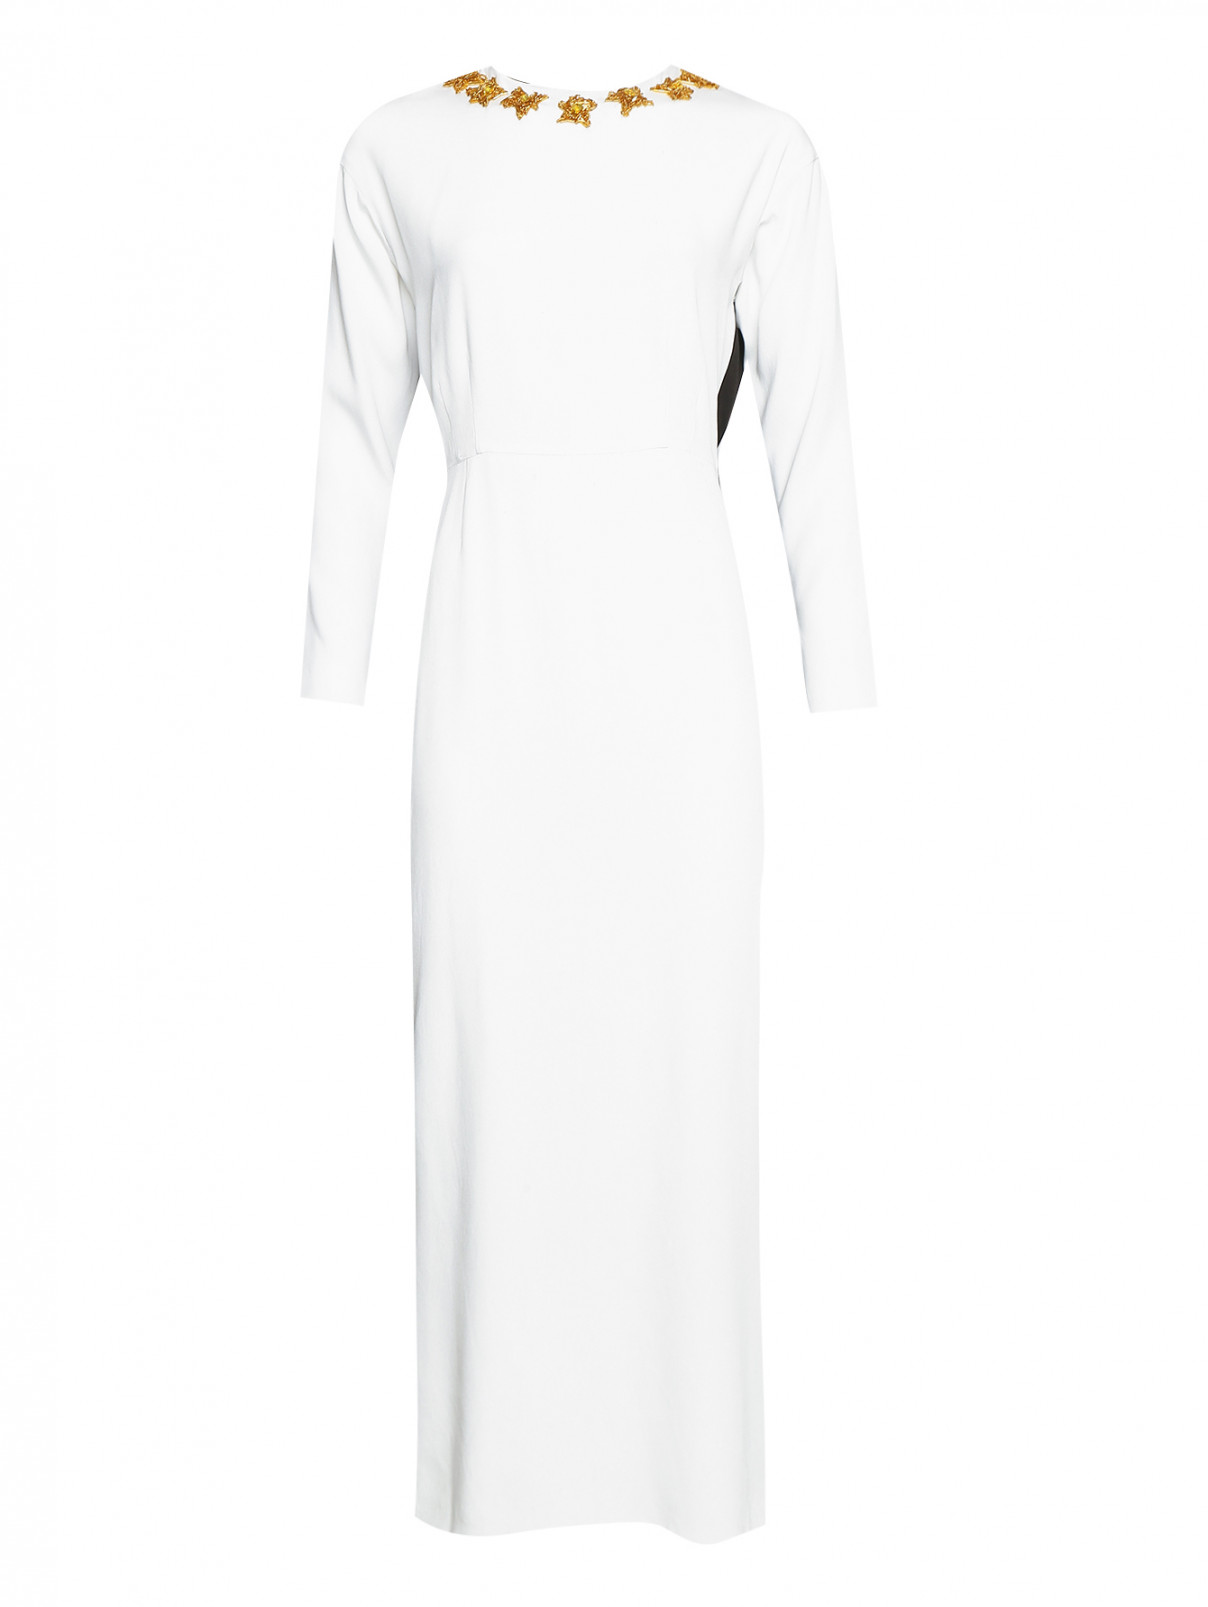 Платье-макси с вышивкой и открытой спиной Alexander Terekhov  –  Общий вид  – Цвет:  Белый